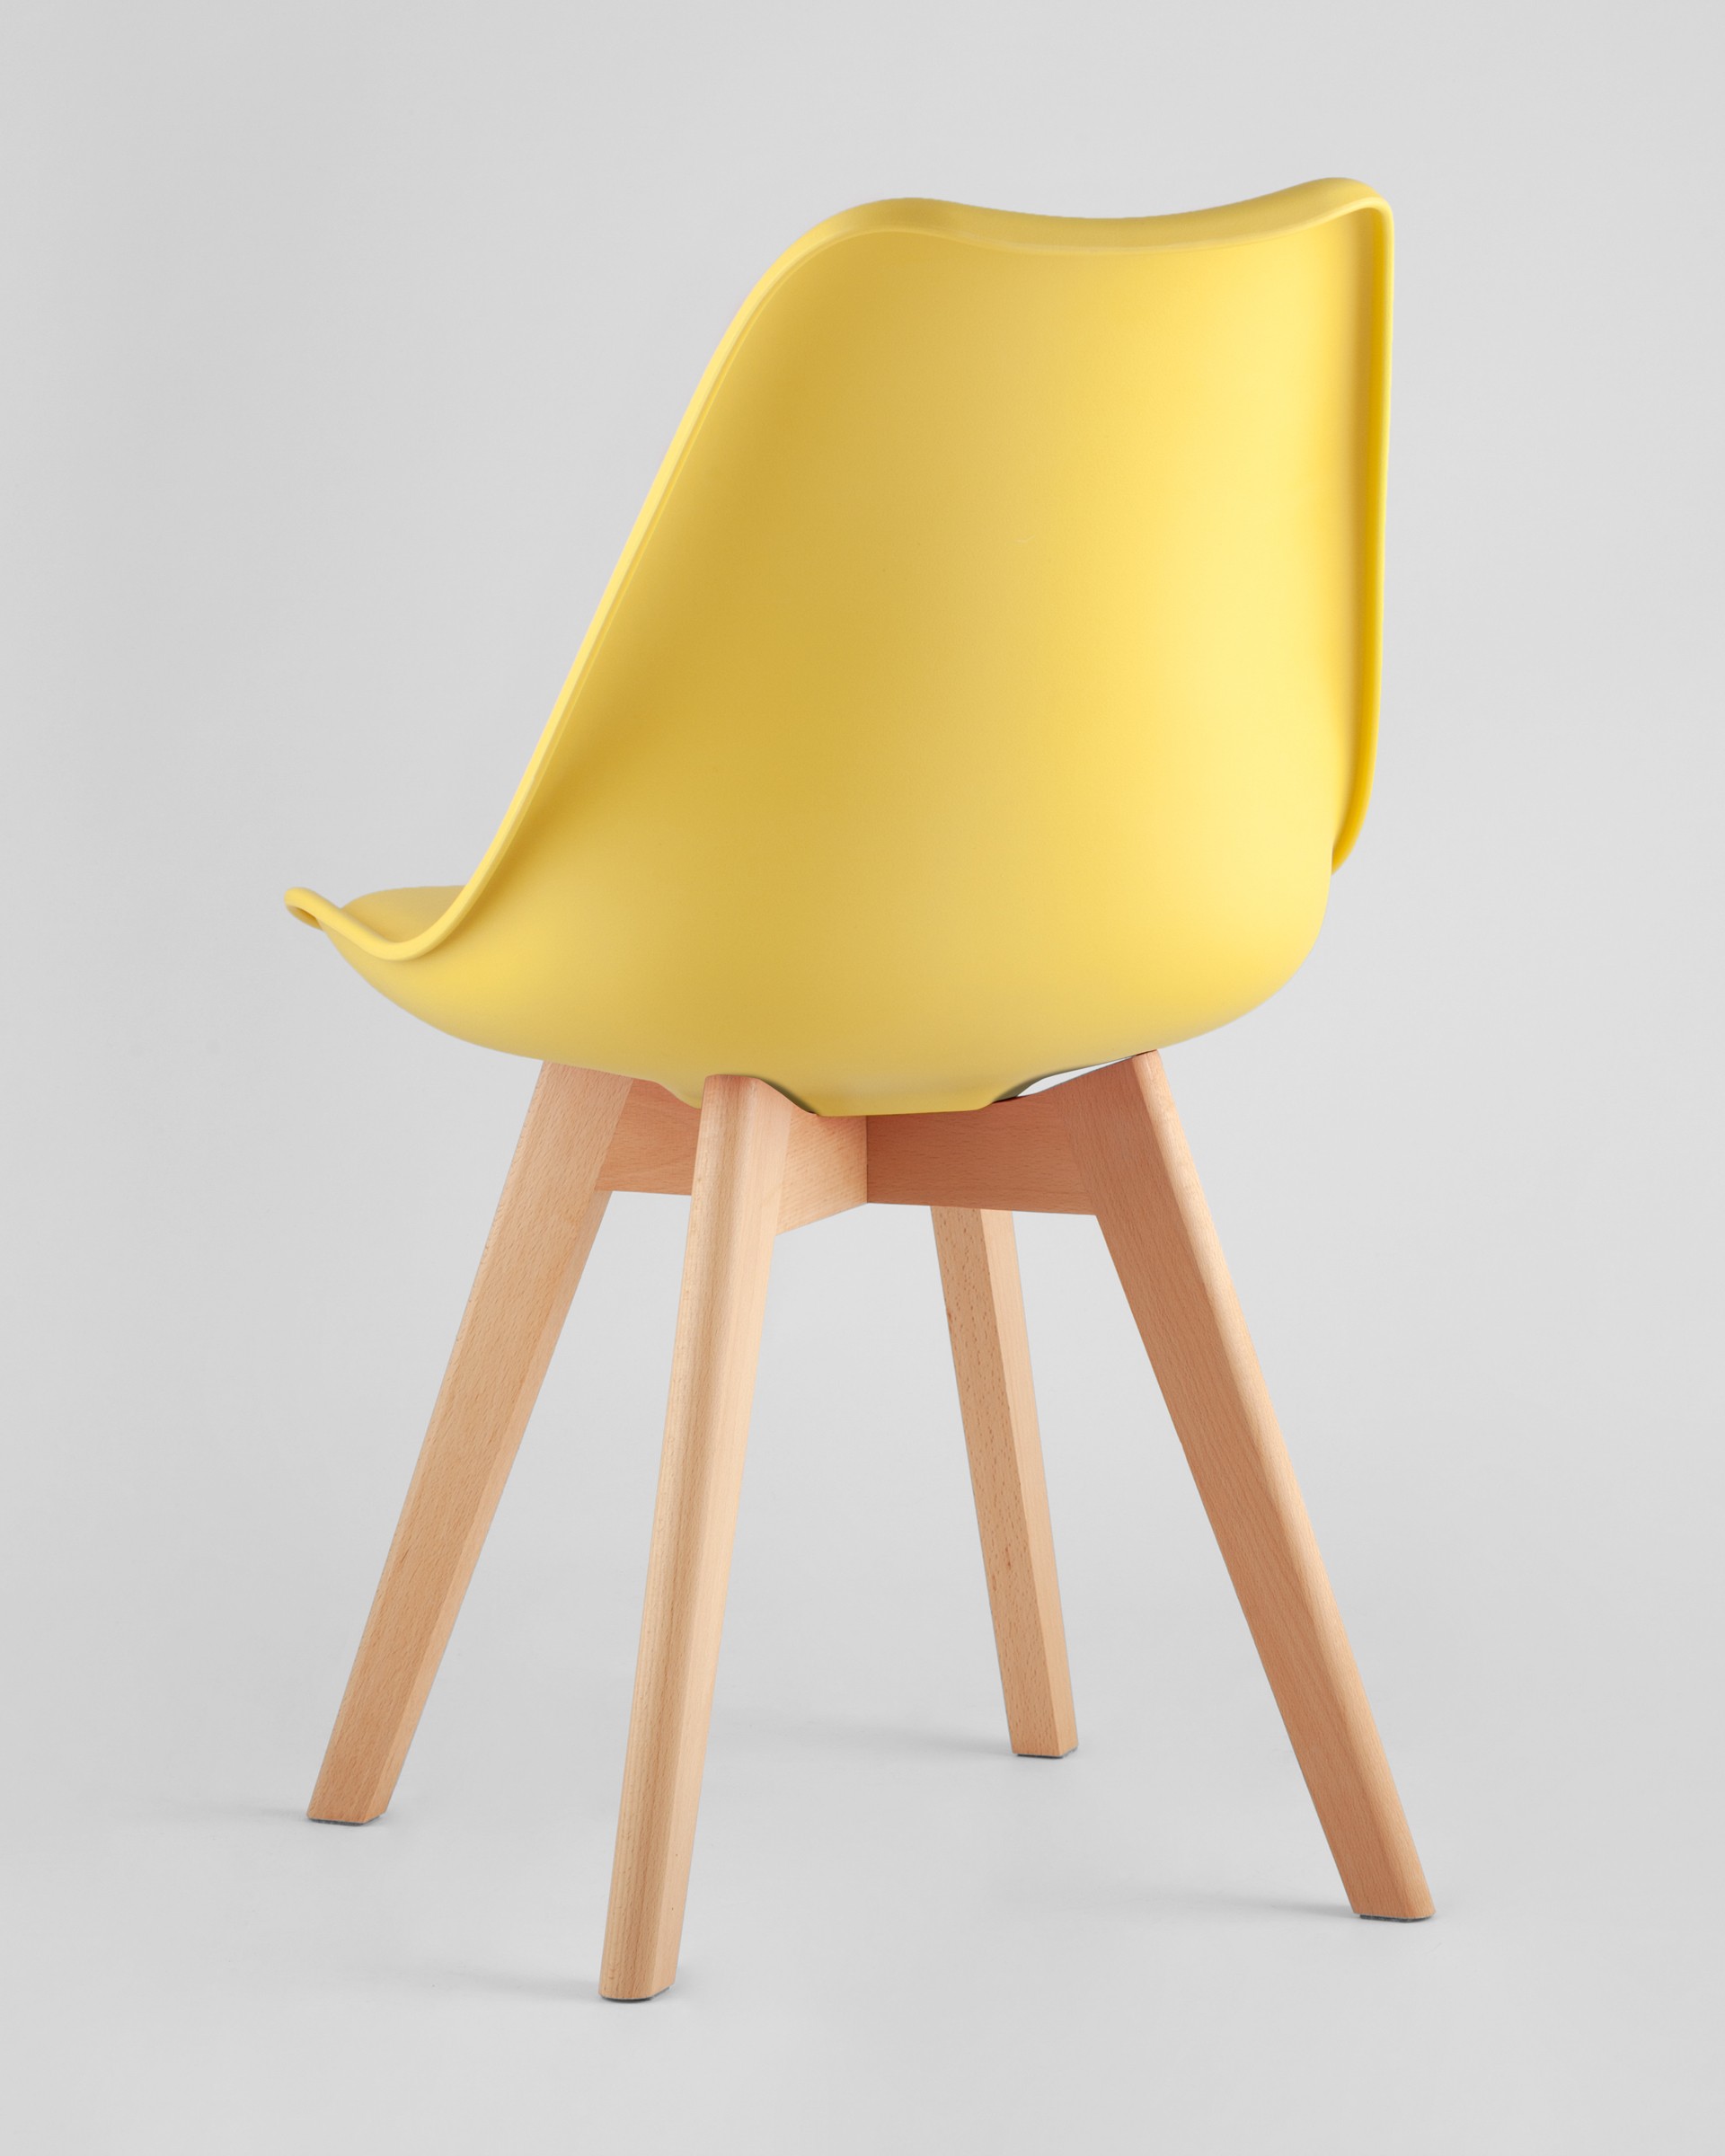 Стул Frankfurt желтый, сиденье из сочетания пластика и экокожи, ножки деревянные